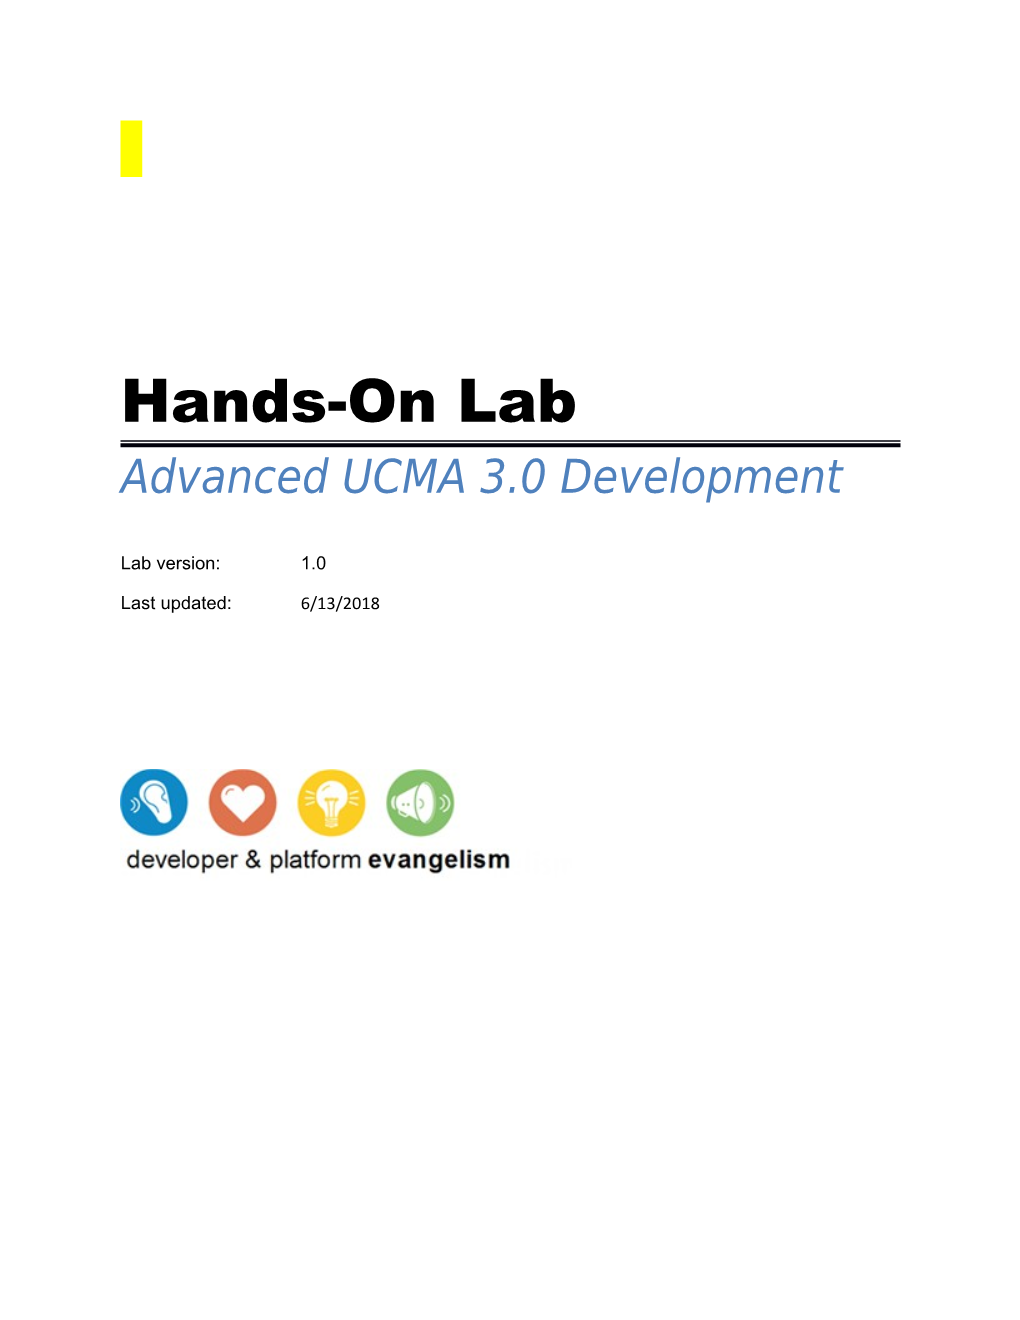 Advanced UCMA 3.0 Development